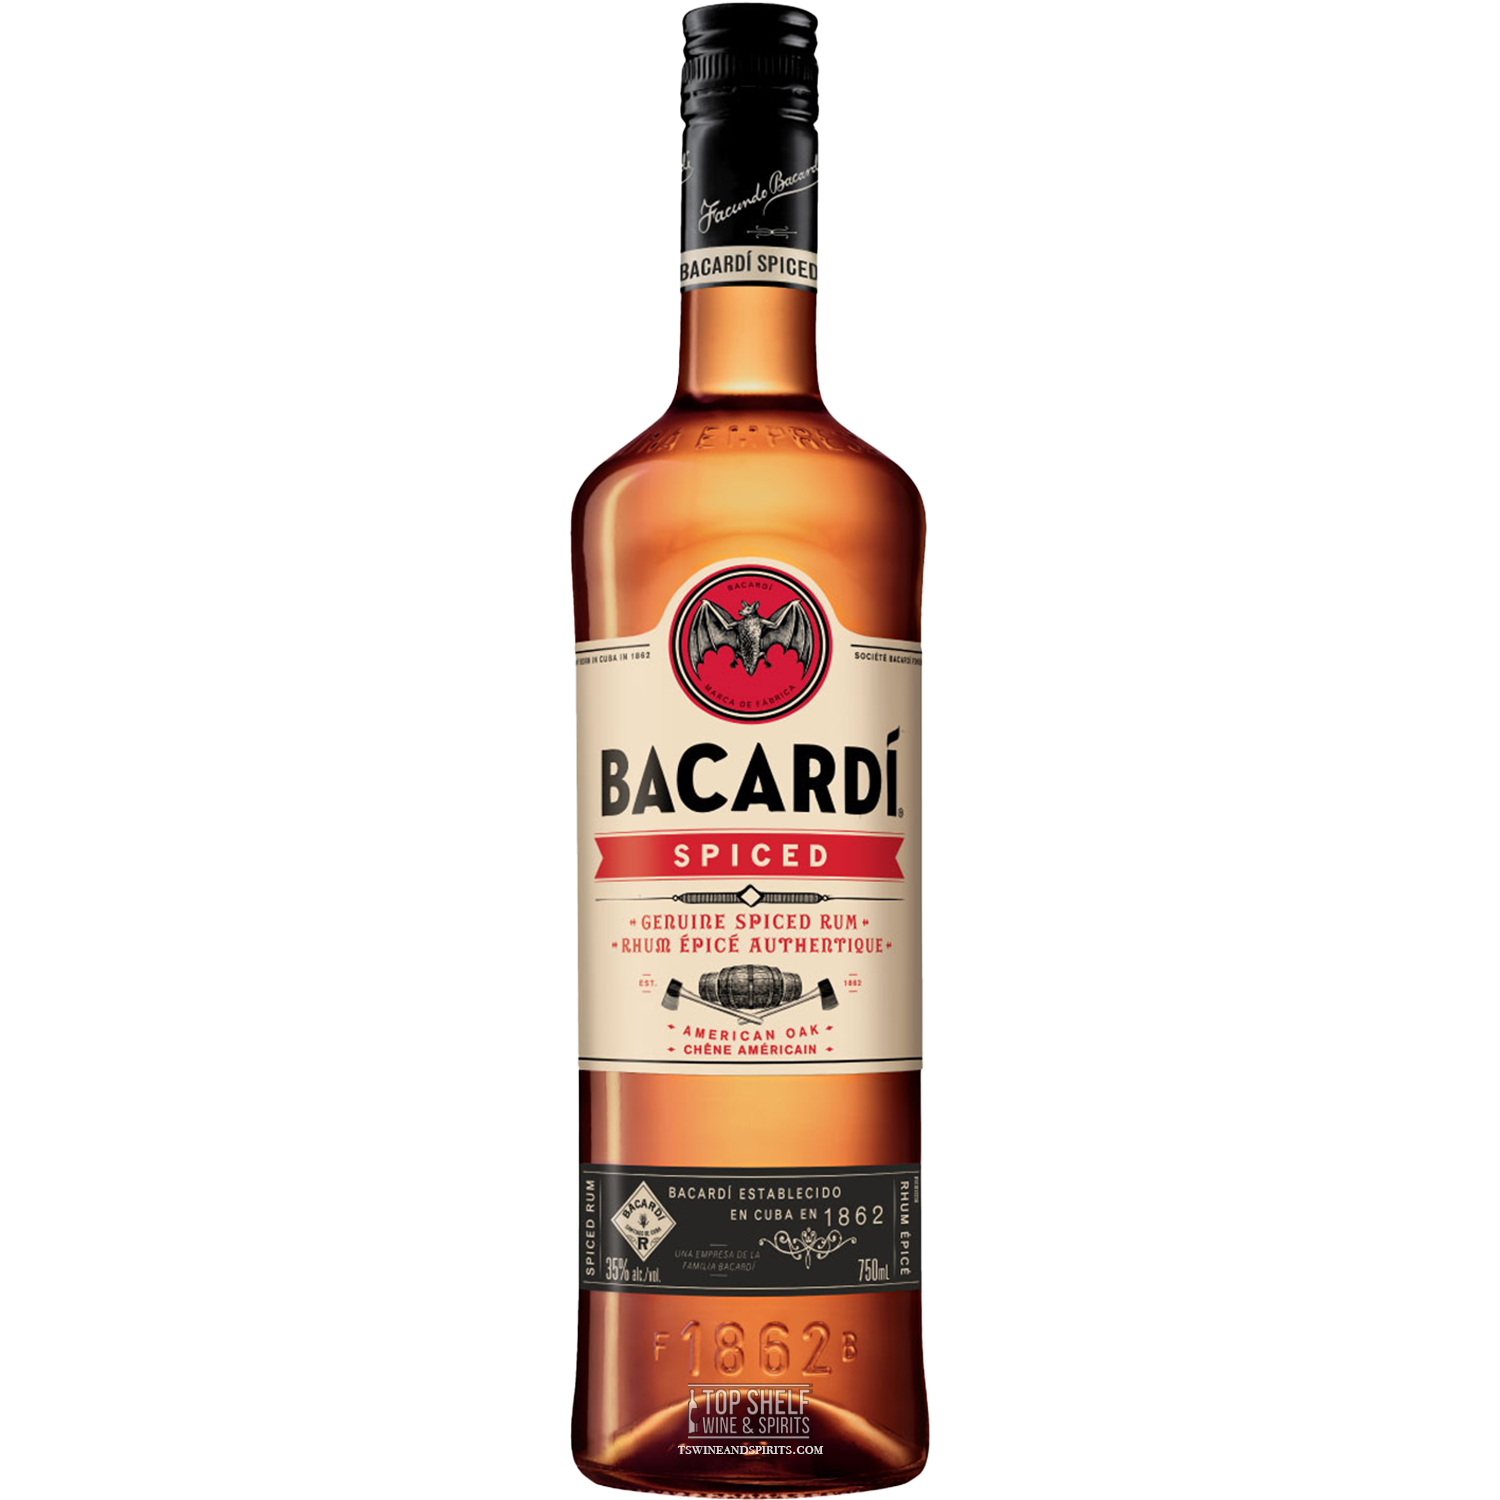 Bacardí Spiced American Oak Rum